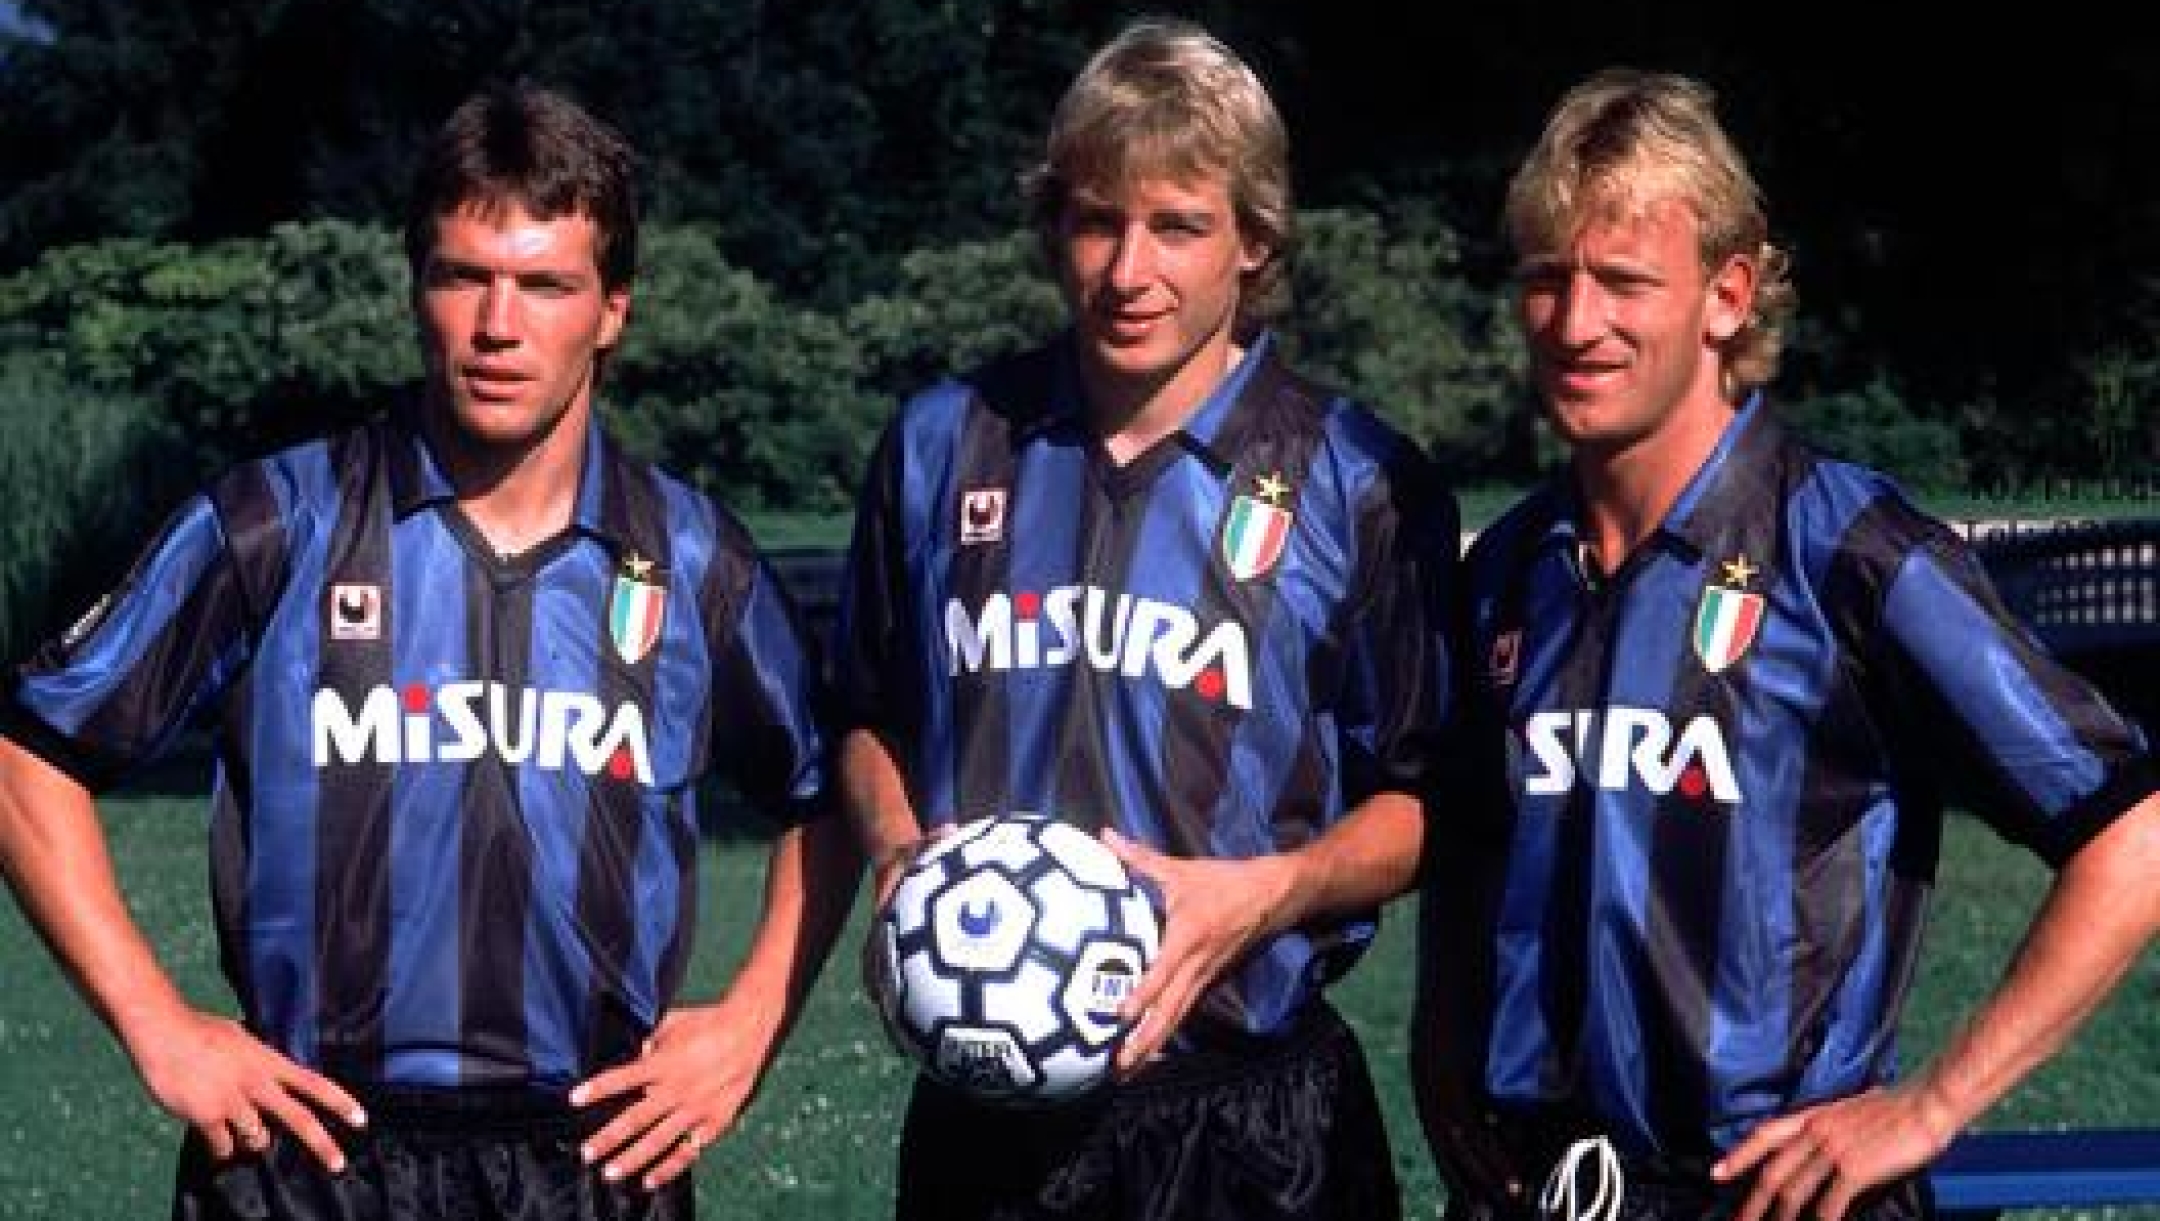 Matthäus, Klinsmann e Brehme in posa con la maglia scudettata e il pallone firmato Uhlsport